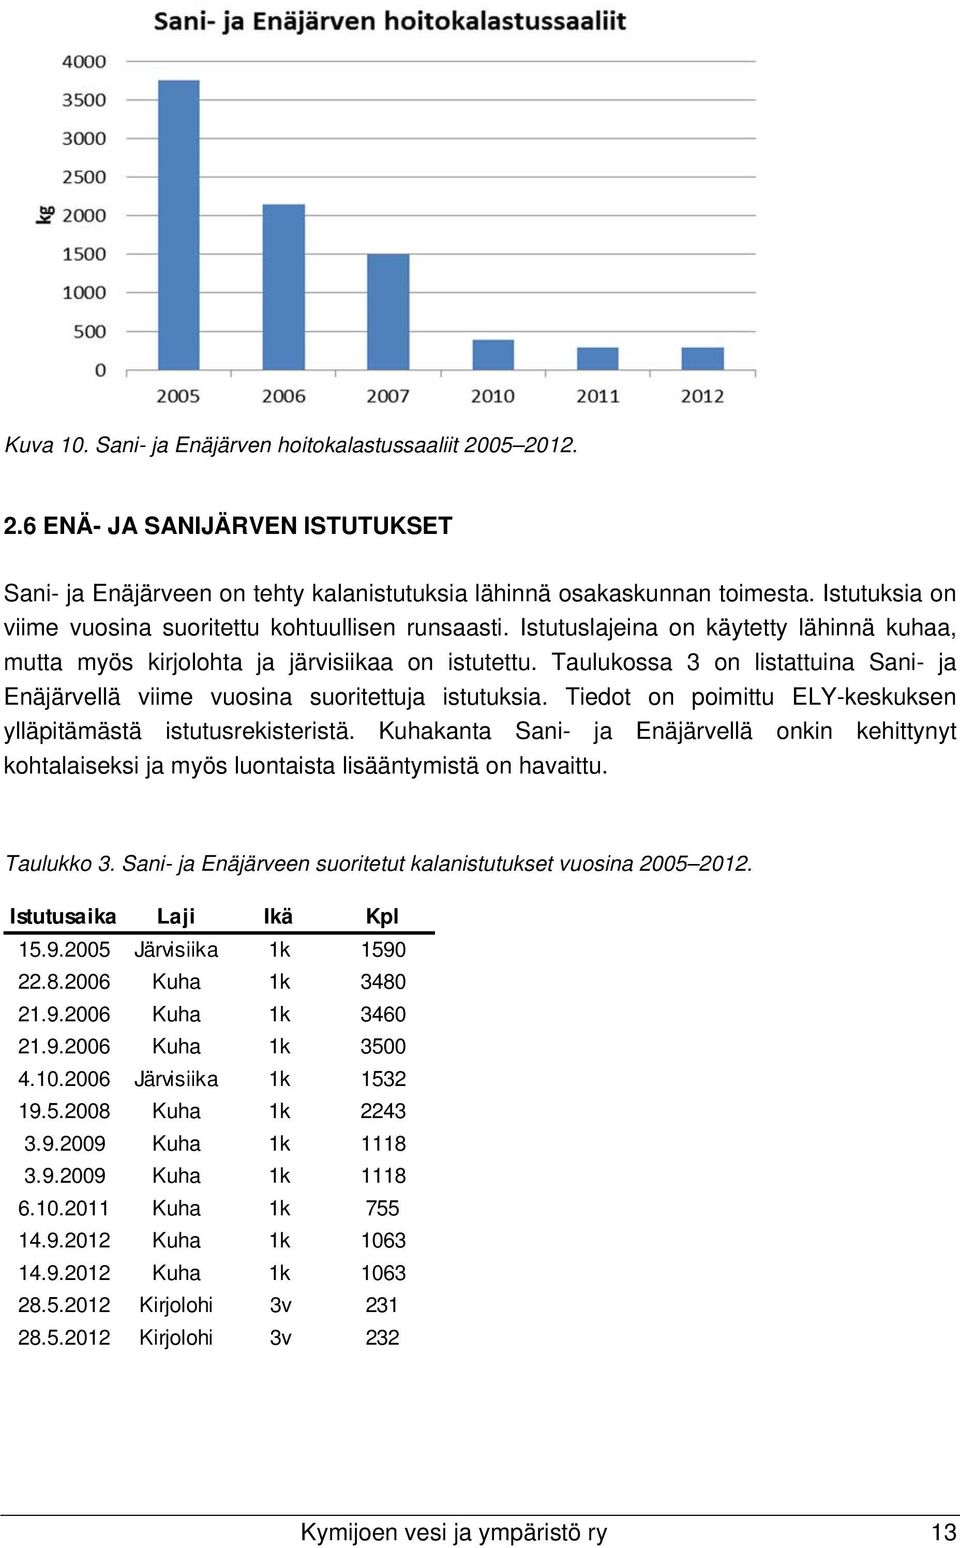 Taulukossa 3 on listattuina Sani- ja Enäjärvellä viime vuosina suoritettuja istutuksia. Tiedot on poimittu ELY-keskuksen ylläpitämästä istutusrekisteristä.